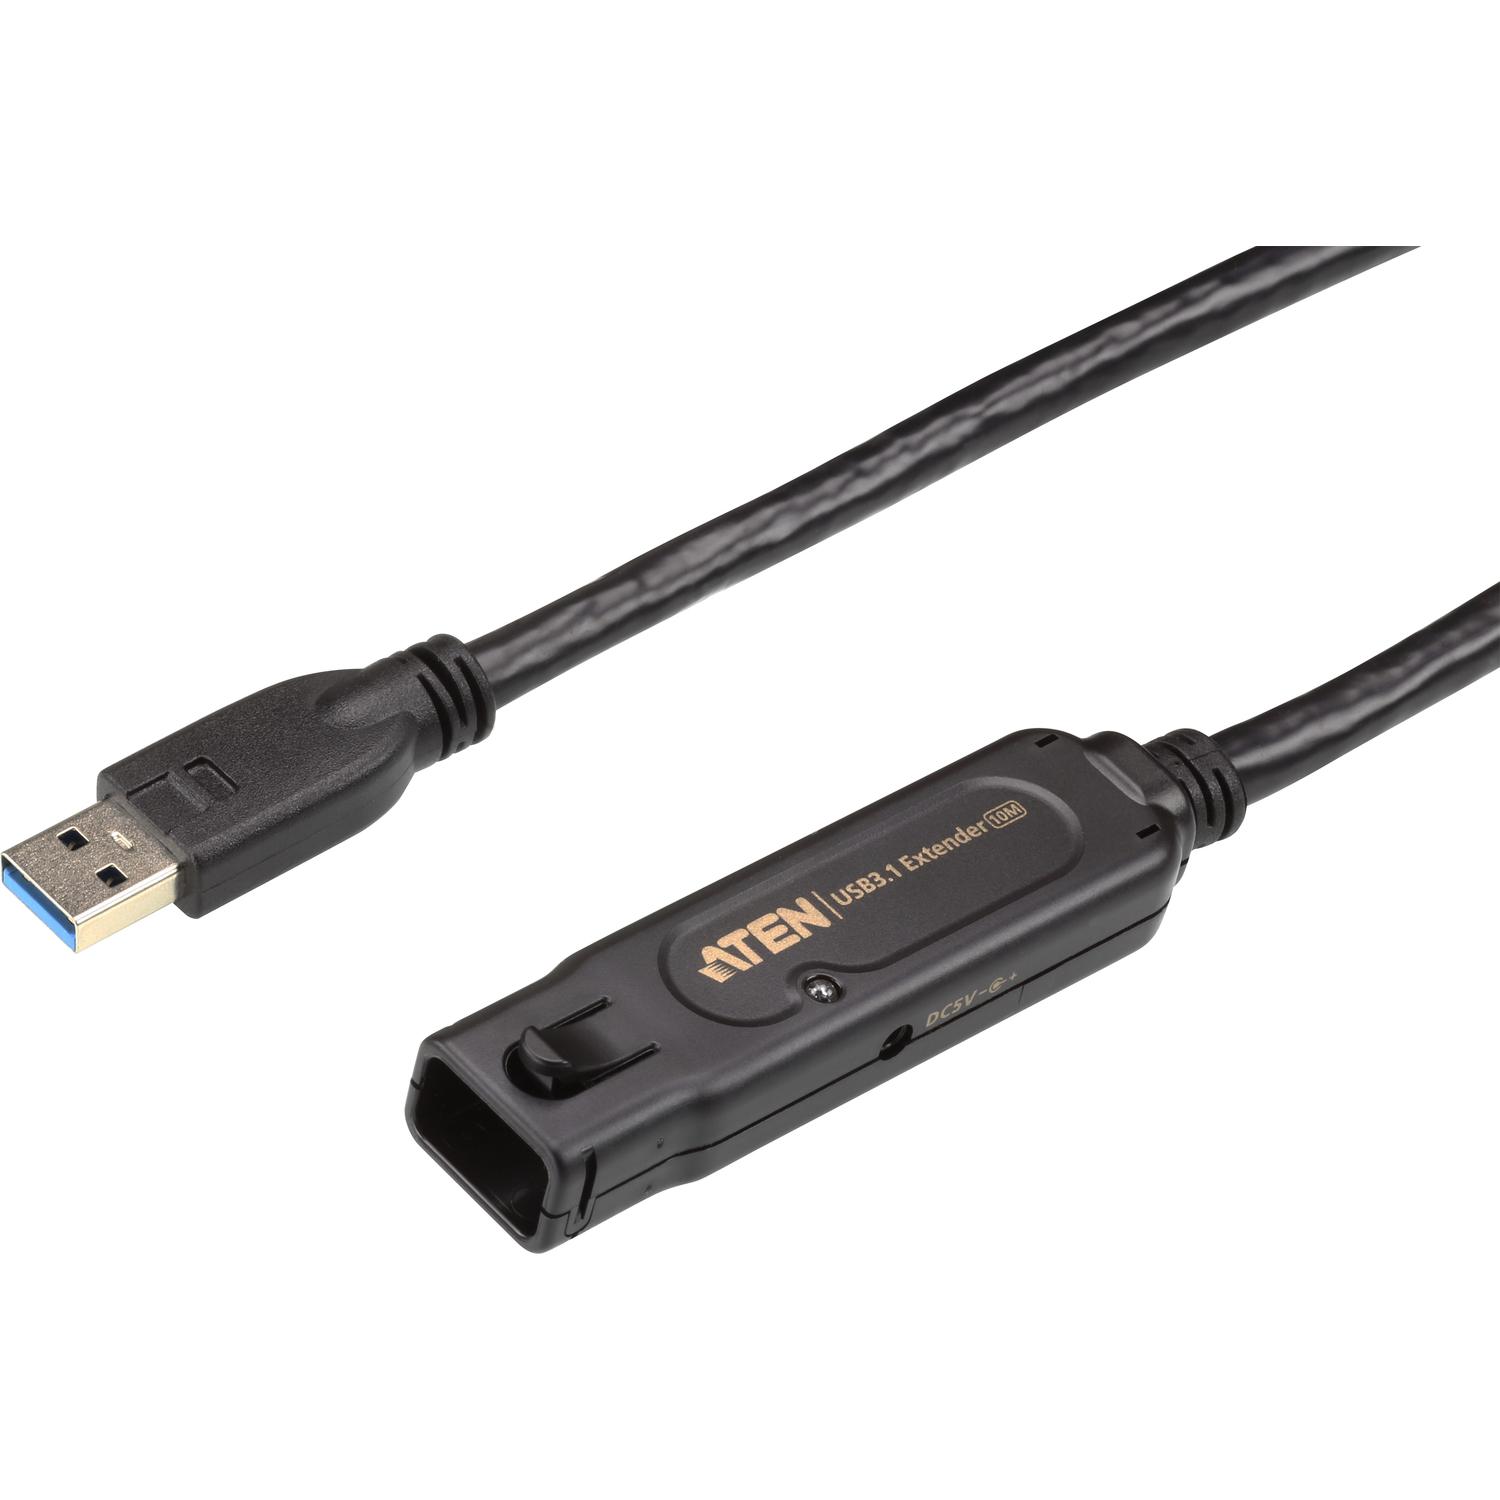 Кабель удлинитель USB3.1 (10 м) Кабель удлинитель USB3.1 (10 м)/ USB 3.1 1-Port Extension Cable 10m